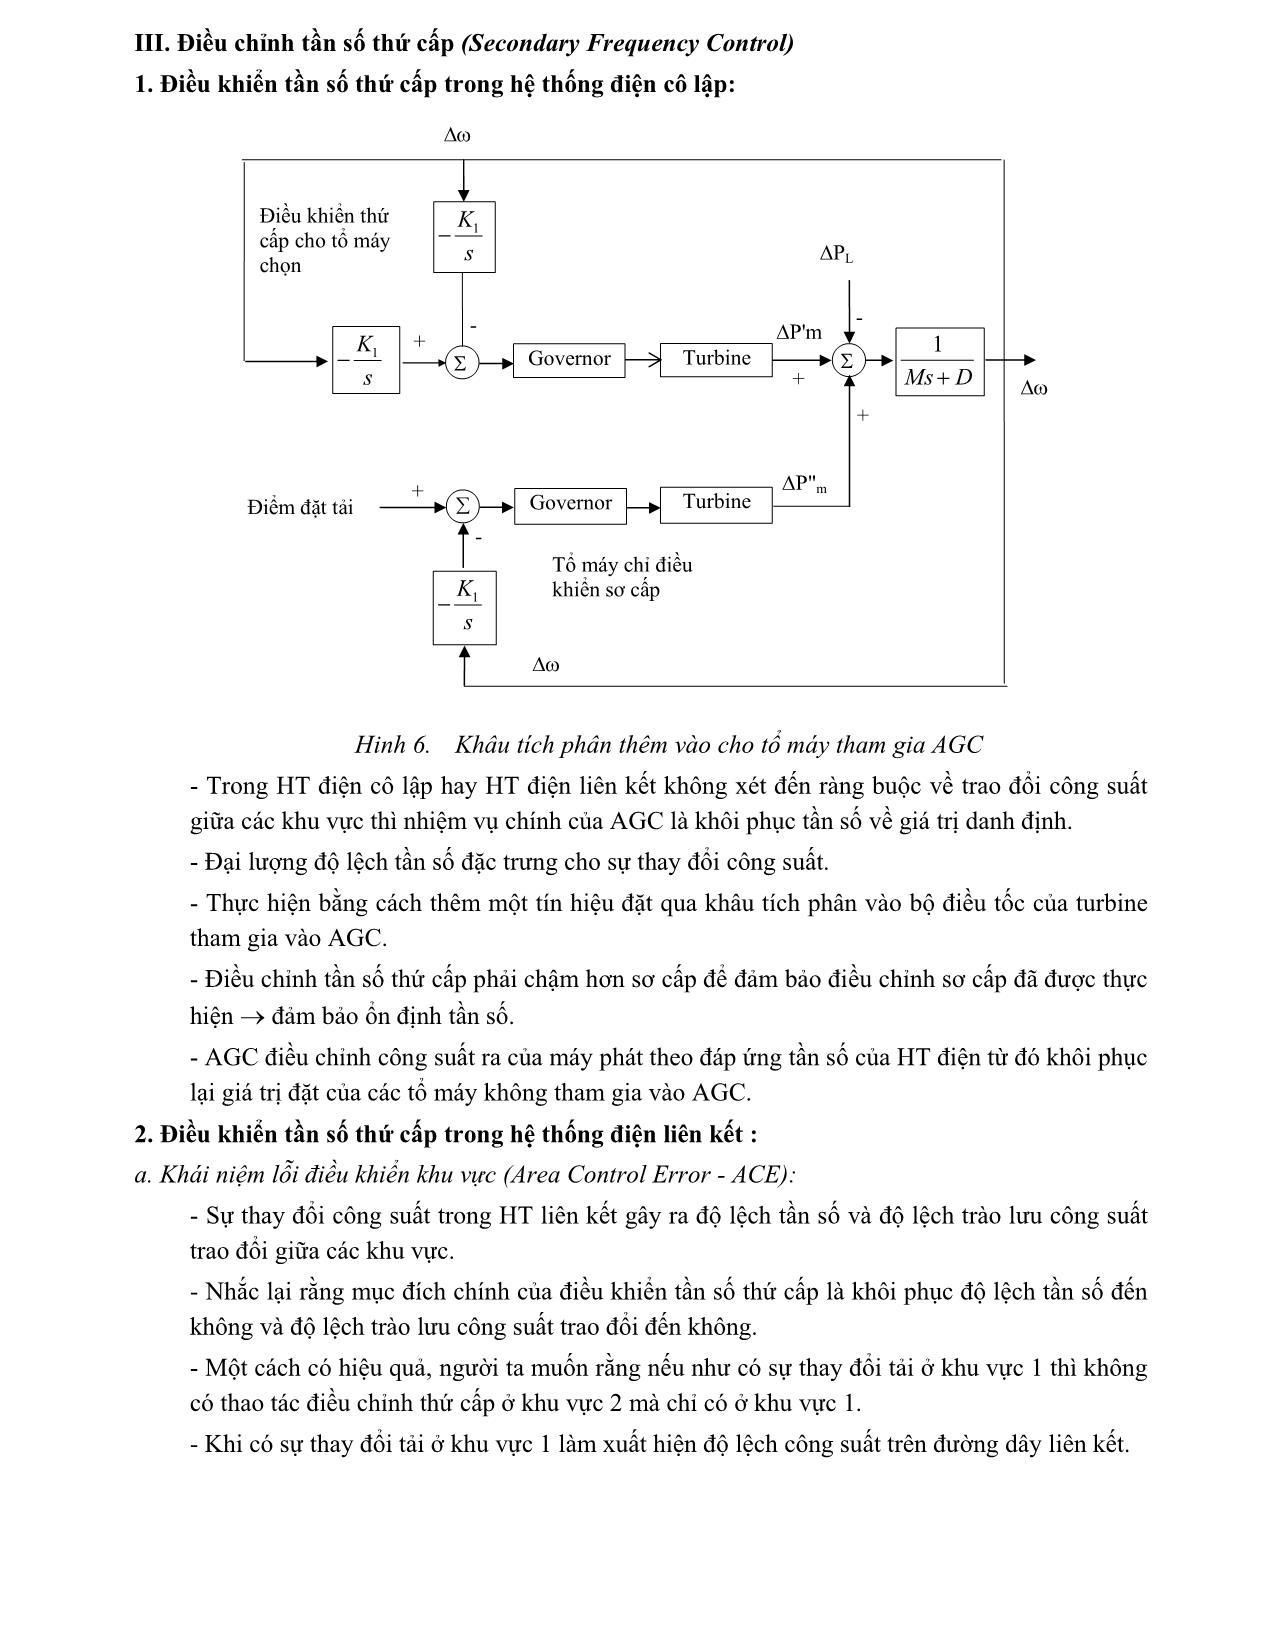 Phương pháp điều chỉnh tần số trong hệ thống điện trang 5